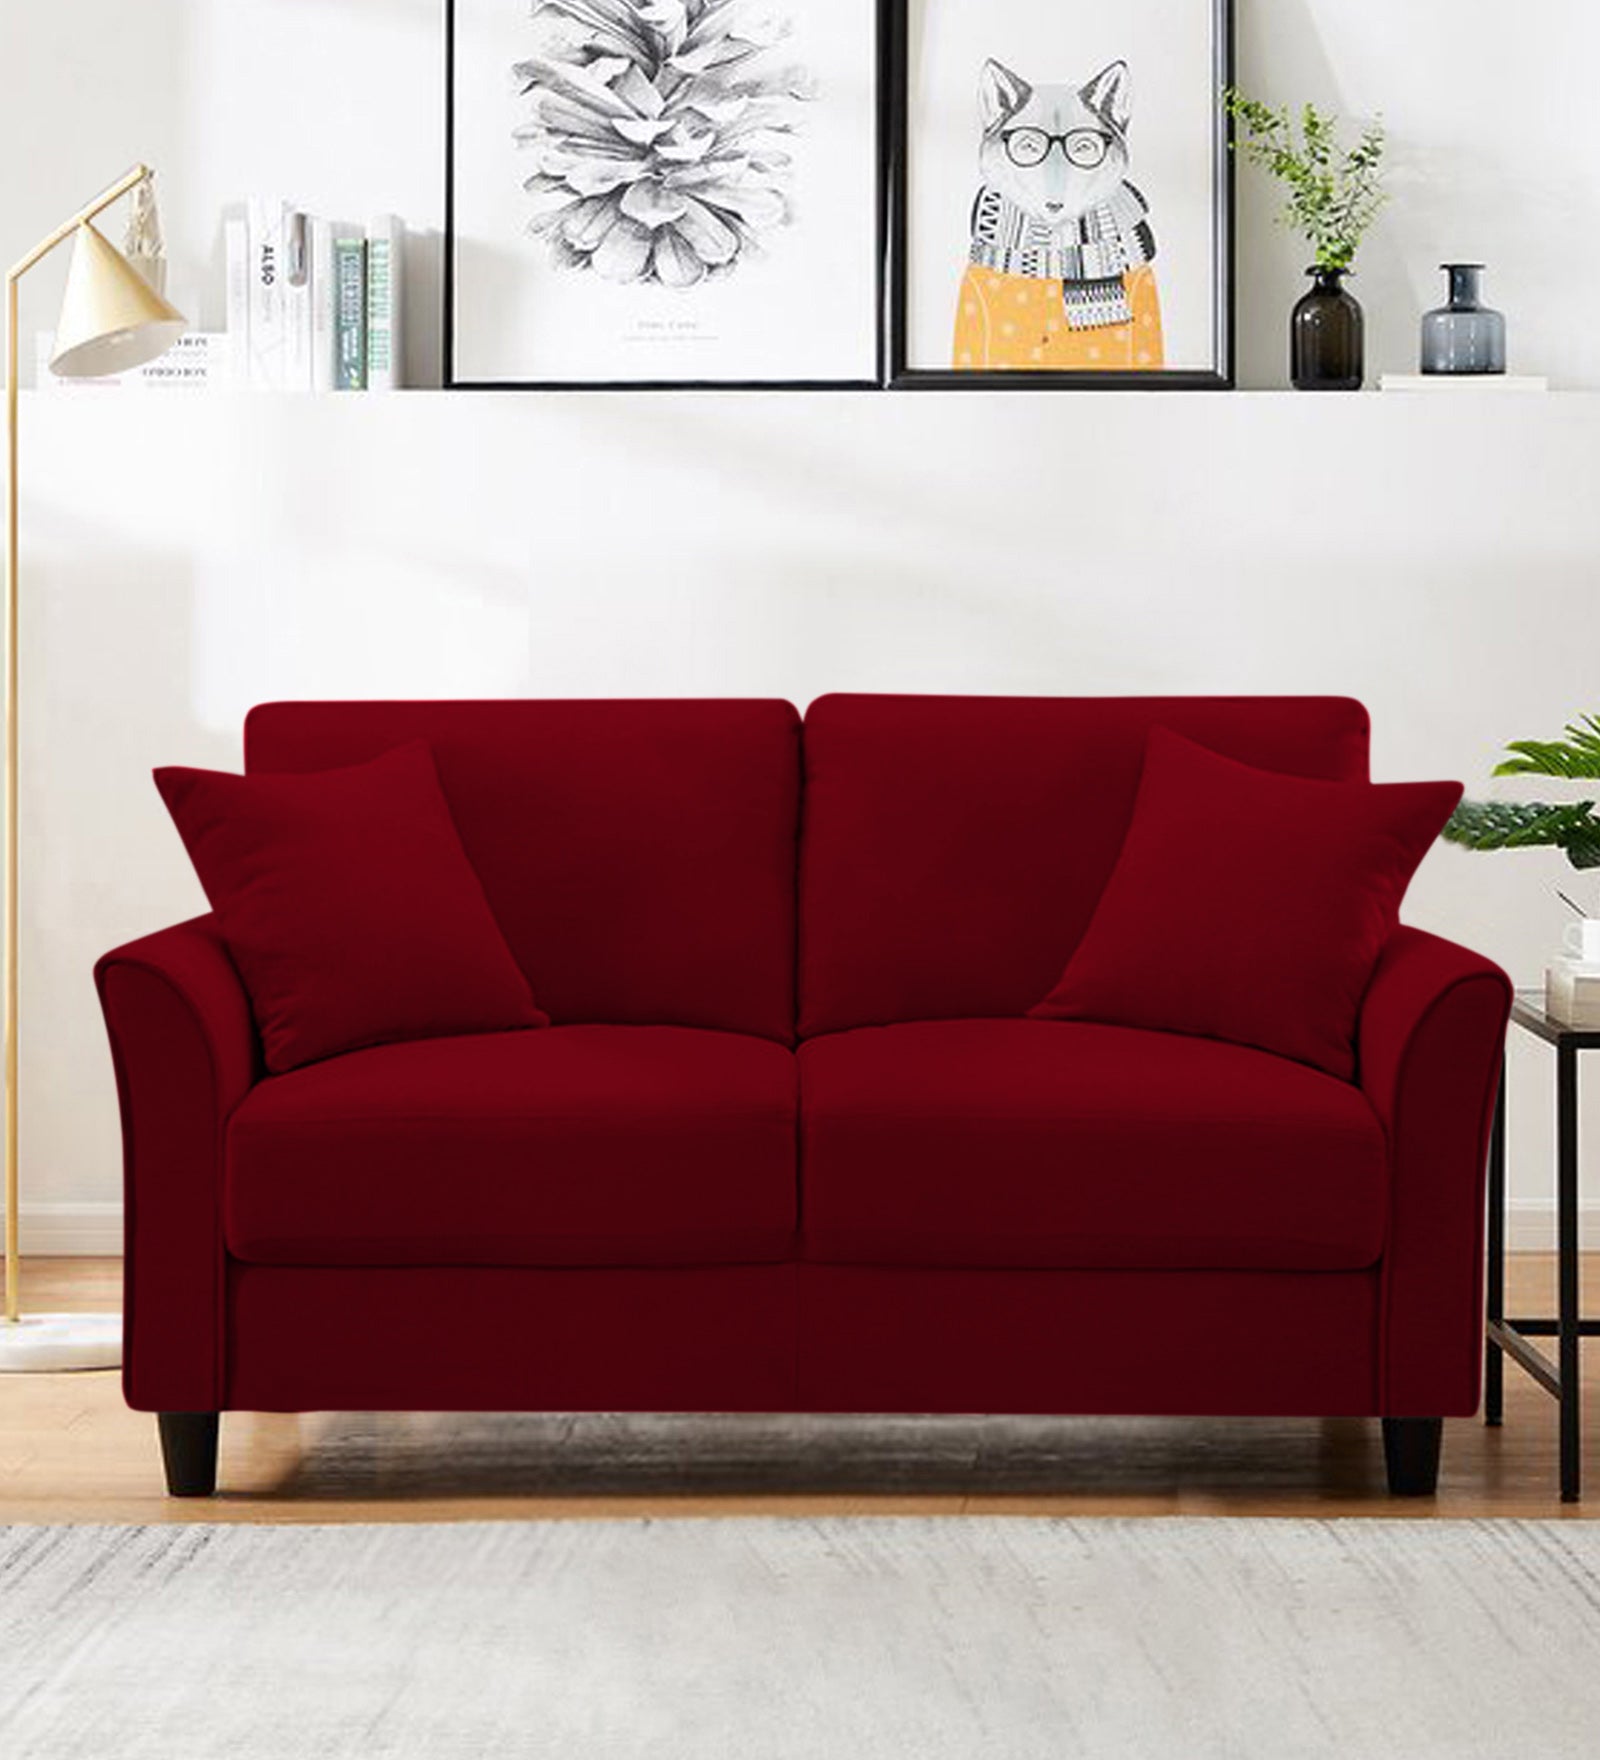 Daroo Velvet 2 Seater Sofa In Cherry Red Colour